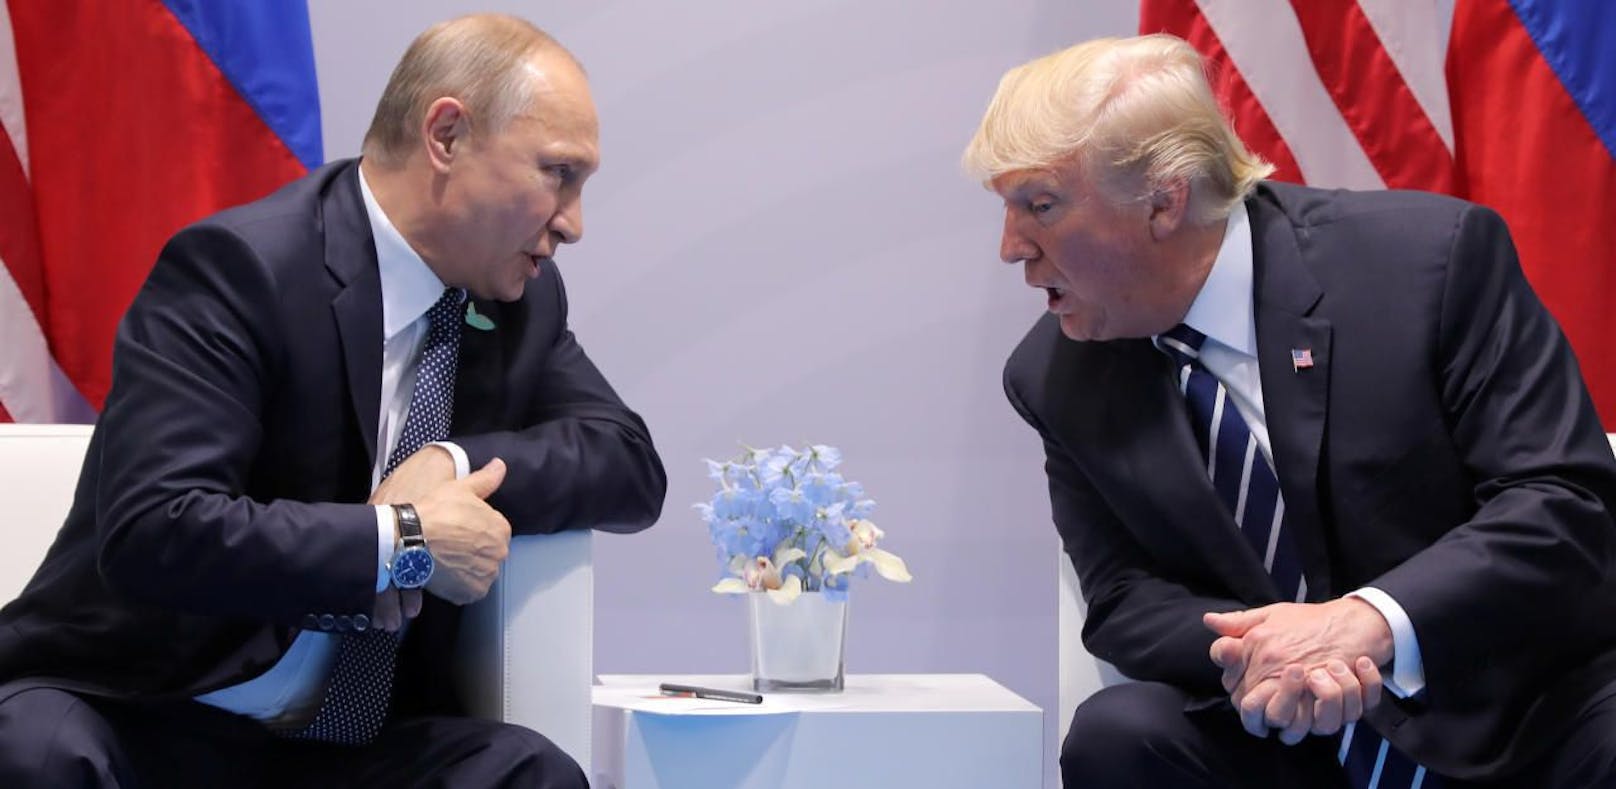 Kreml-Chef Wladimir Putin und US-Präsident Donald Trump trafen beim G20-Gipfel in Hamburg erstmals offiziell aufeinander.